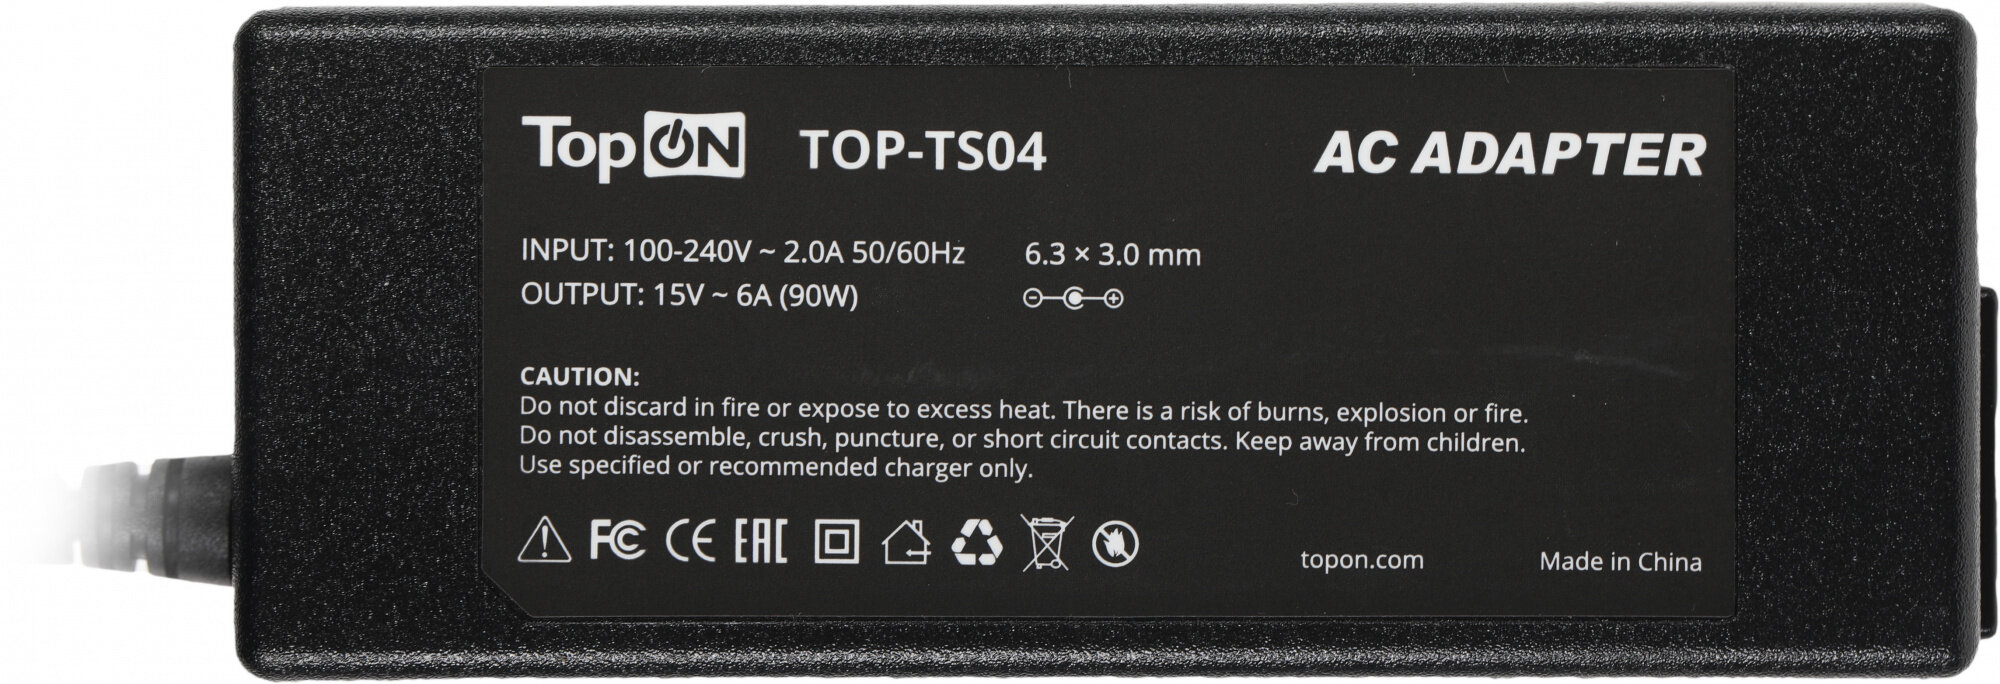 Зарядное устройство TopON 90W, 15V, 6A для Toshiba Satellite A100, Tecra, Qosmio, PA2521 6.3x3.0мм TOP-TS04 - фото №5